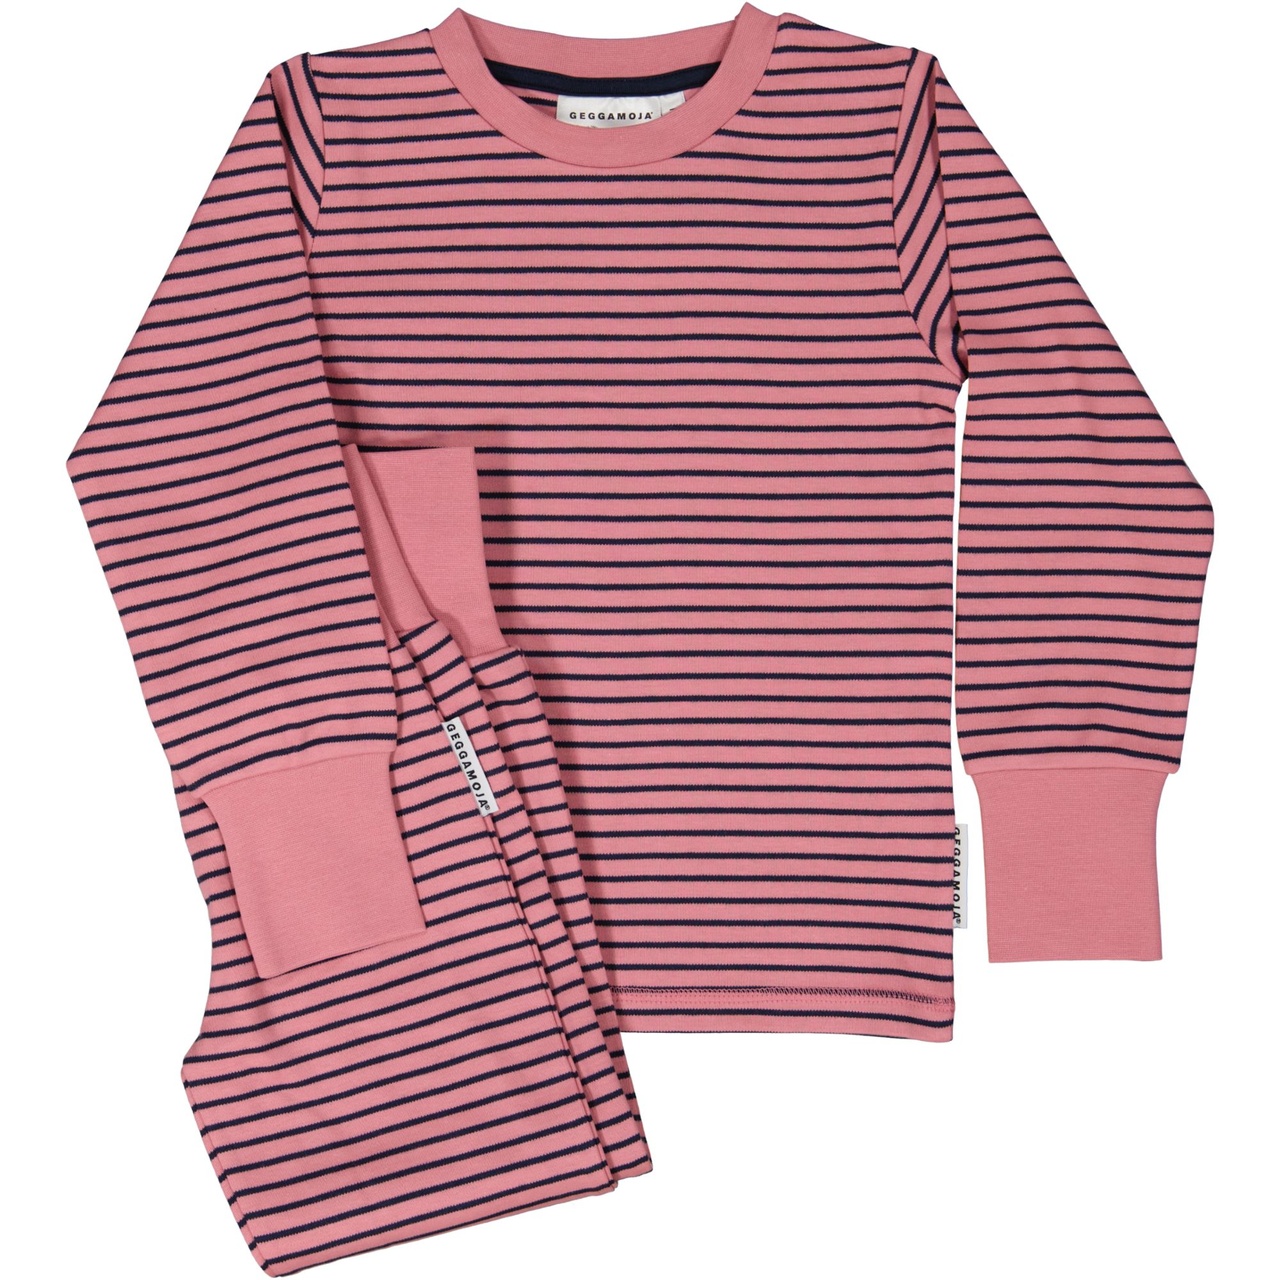 Two piece pyjamas Pink/navy 134/140